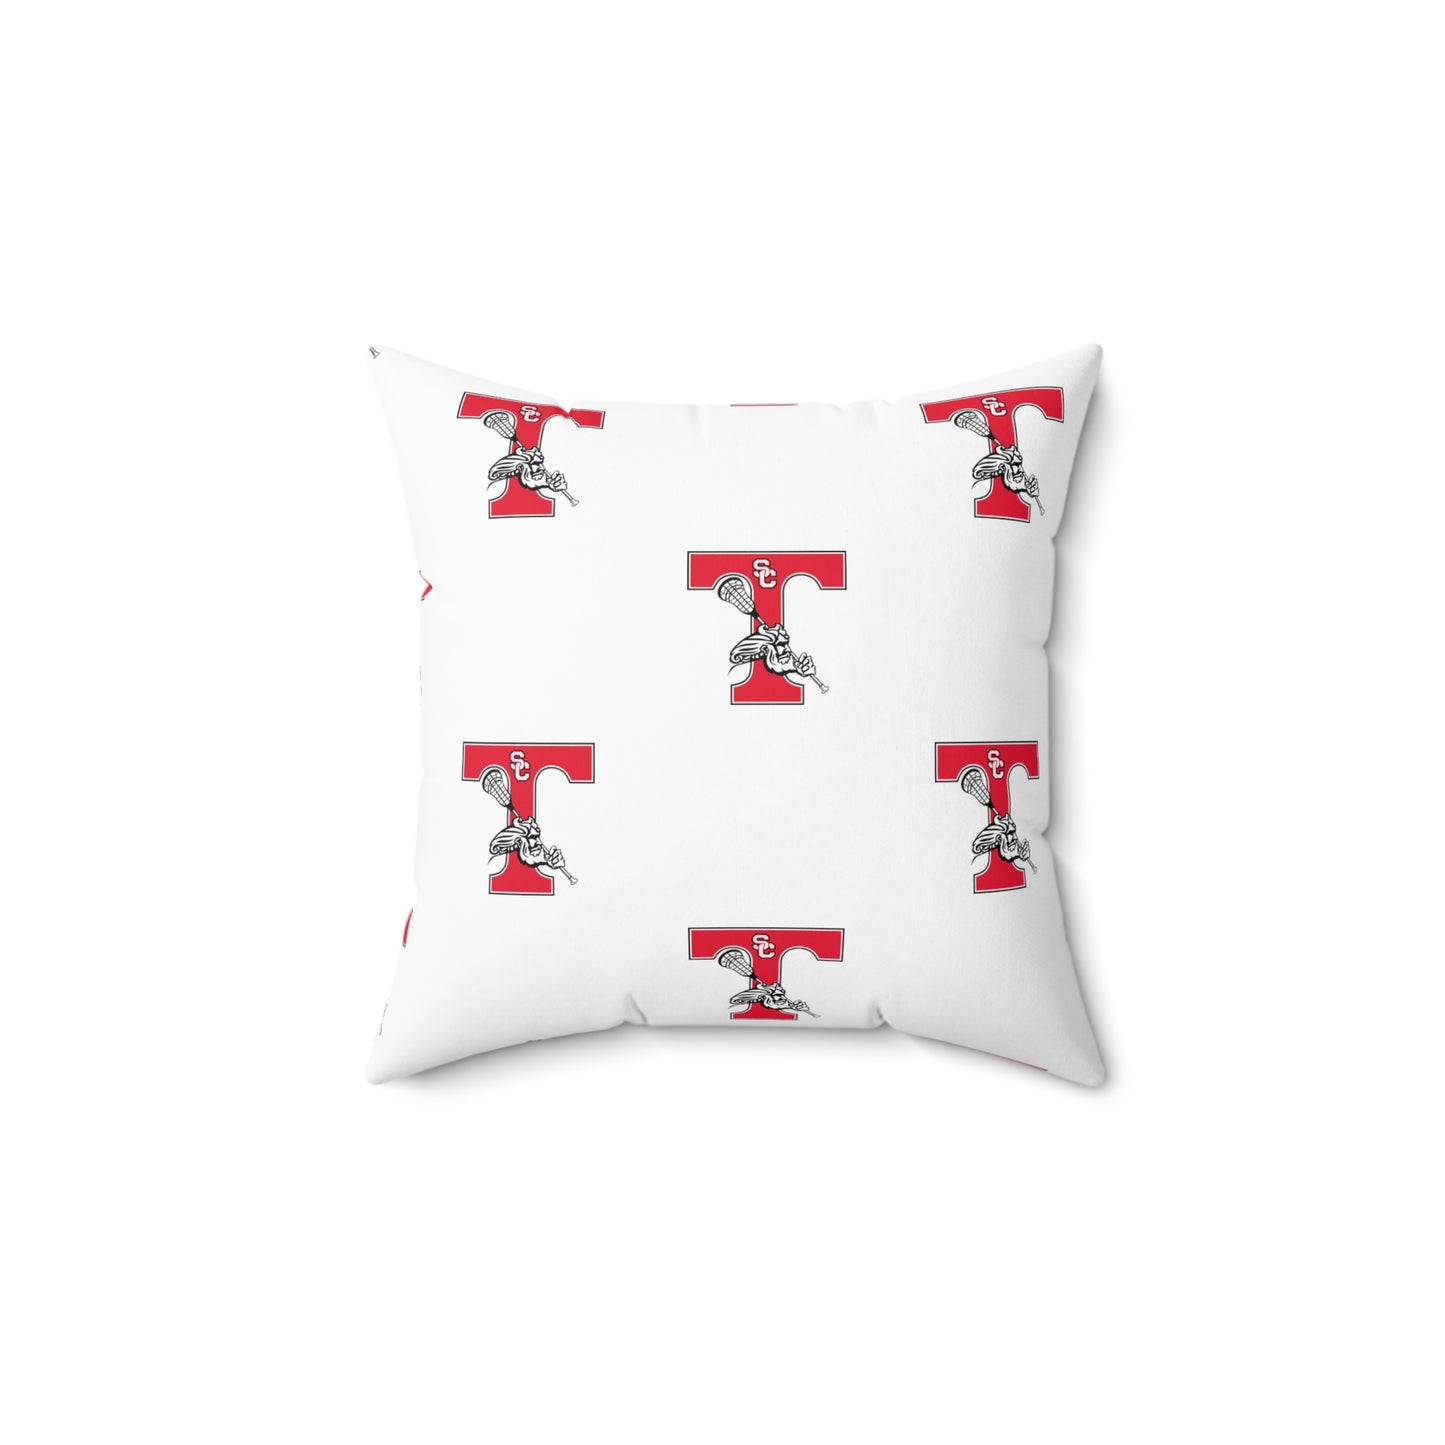 Triton Lacrosse Spun Polyester Square Pillow